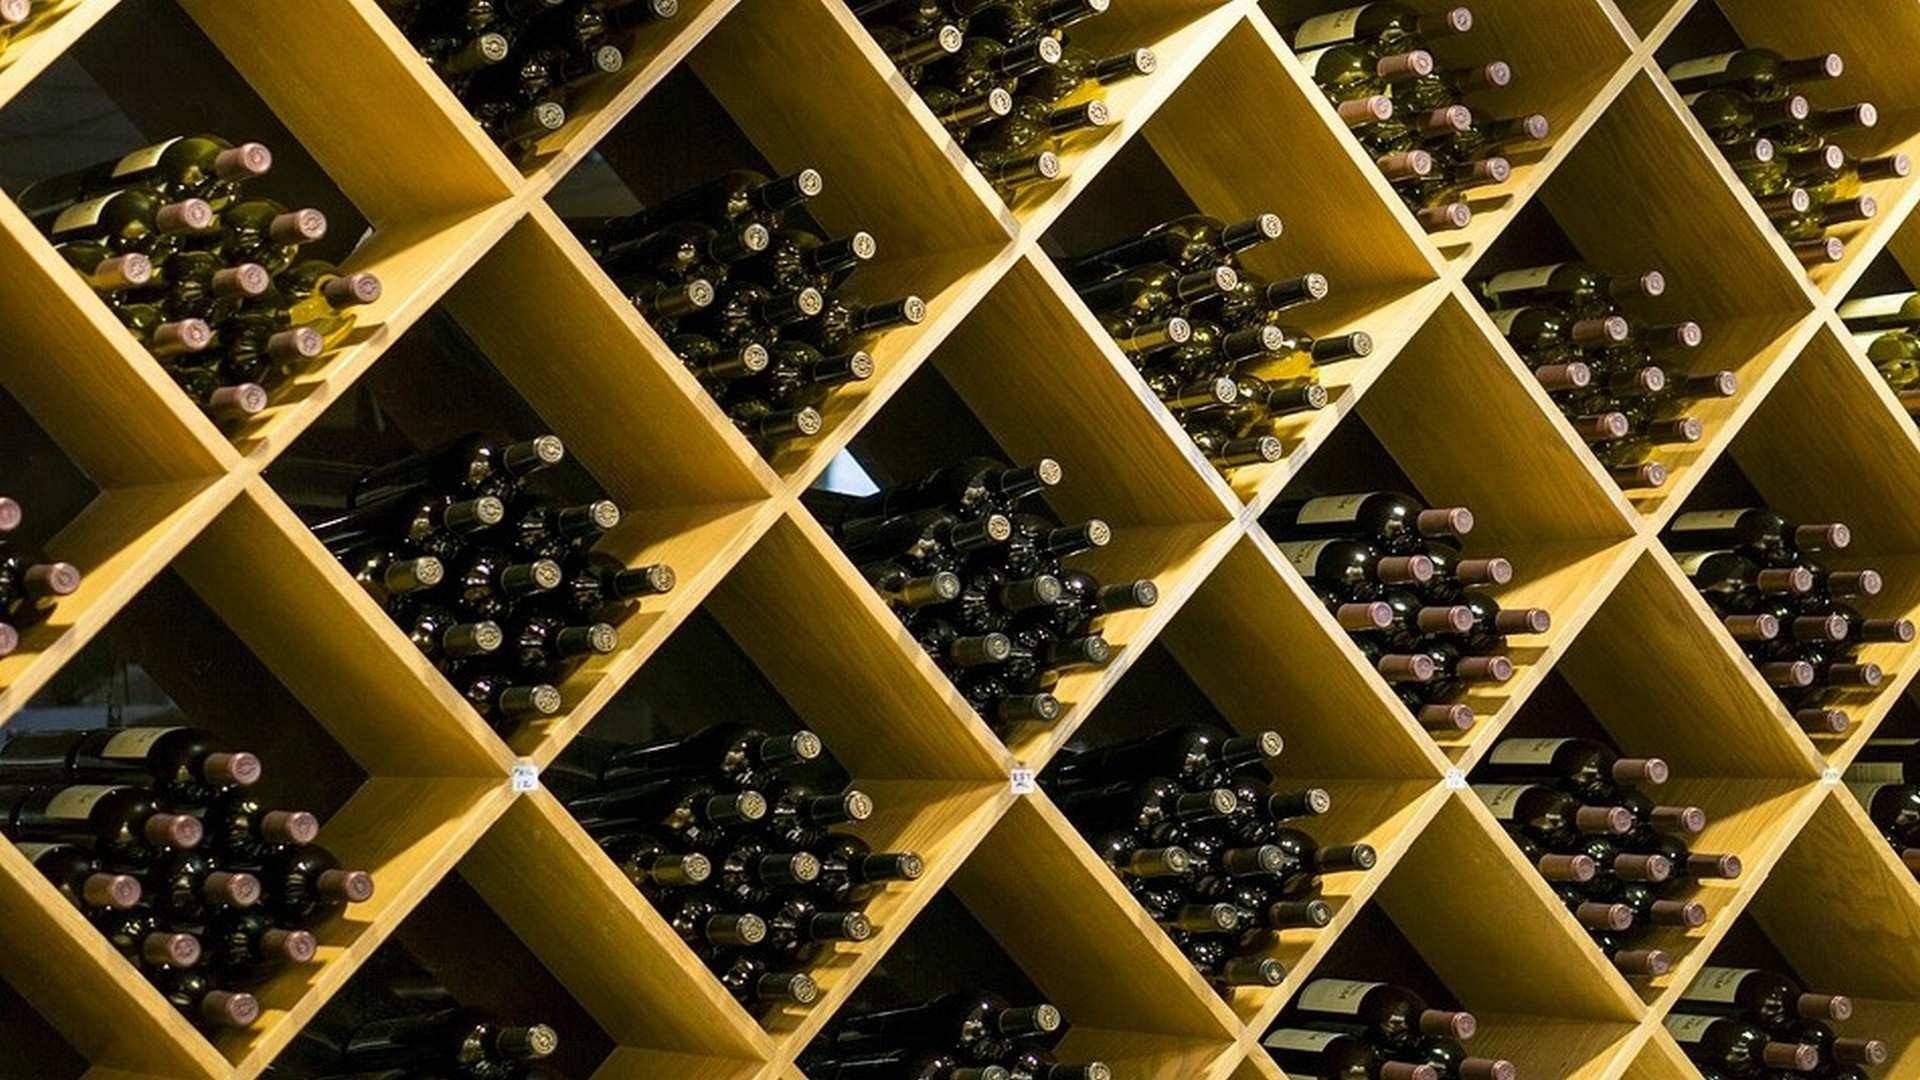 La calidad de los vinos en España ha subido enormemente en los últimos 30 años